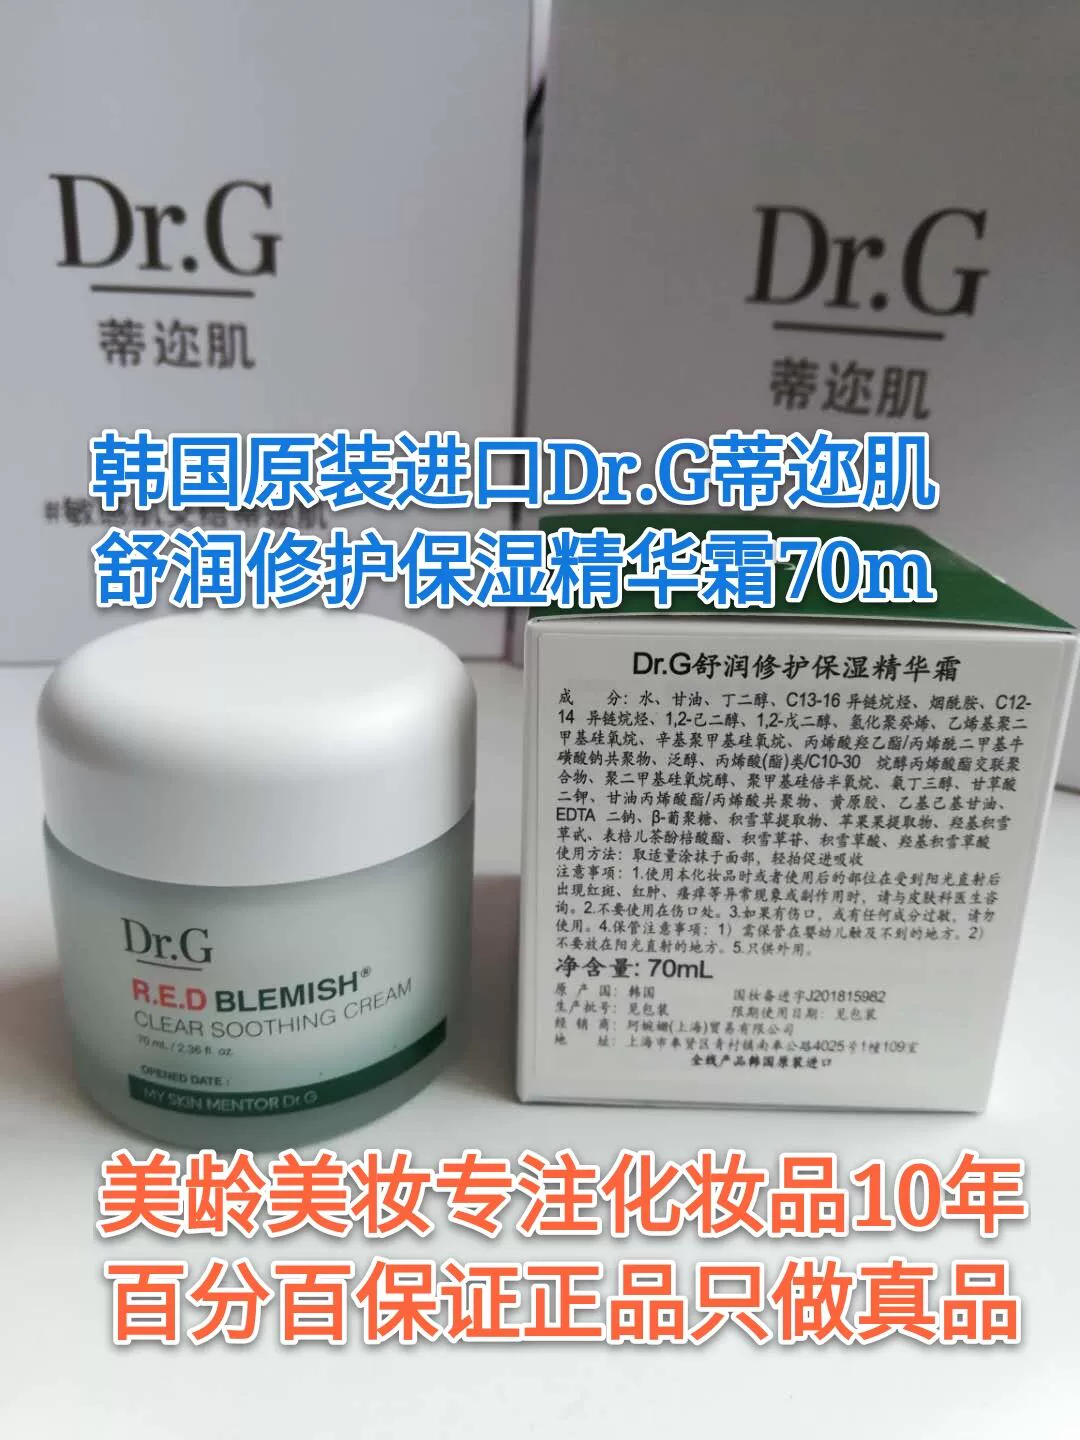 Kem dưỡng ẩm làm dịu da Dr.G pedicle Mechanical Drg 70ml Centella asiatica send 30ml Nhập khẩu Hàn Quốc - Kem dưỡng da